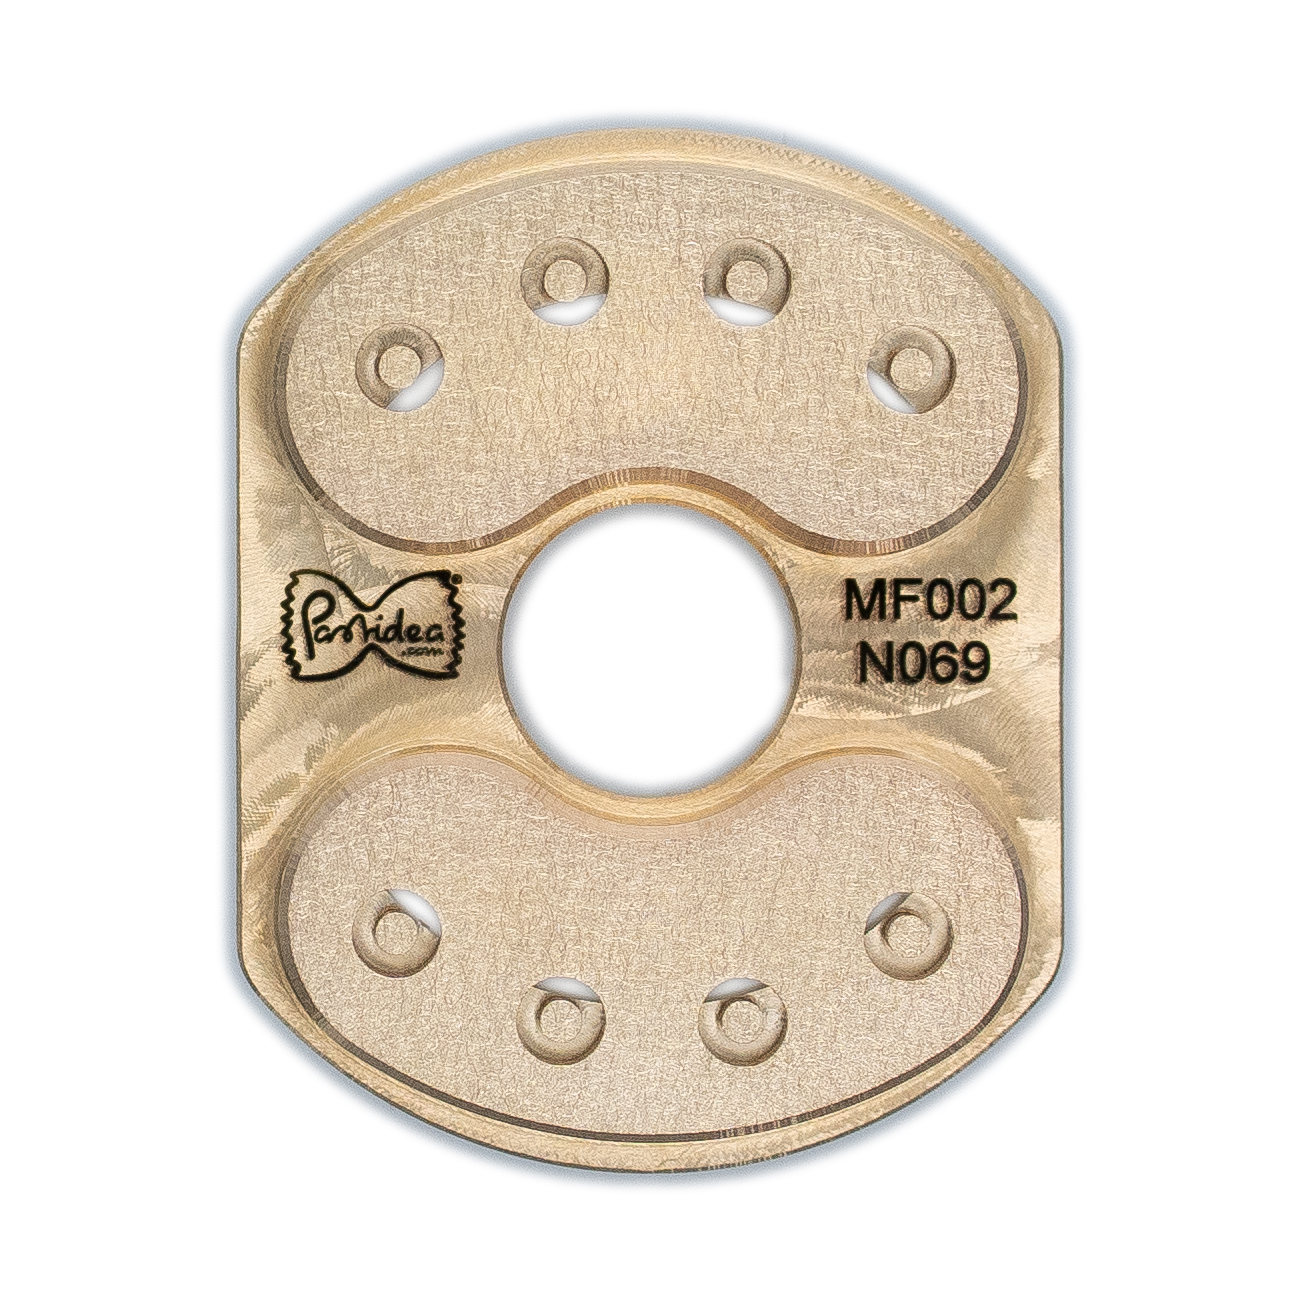 pasta einsatz (typ 2) in bronze funghi 10mm für philips pasta maker avance / 7000 series (einsatzhalter erforderlich)